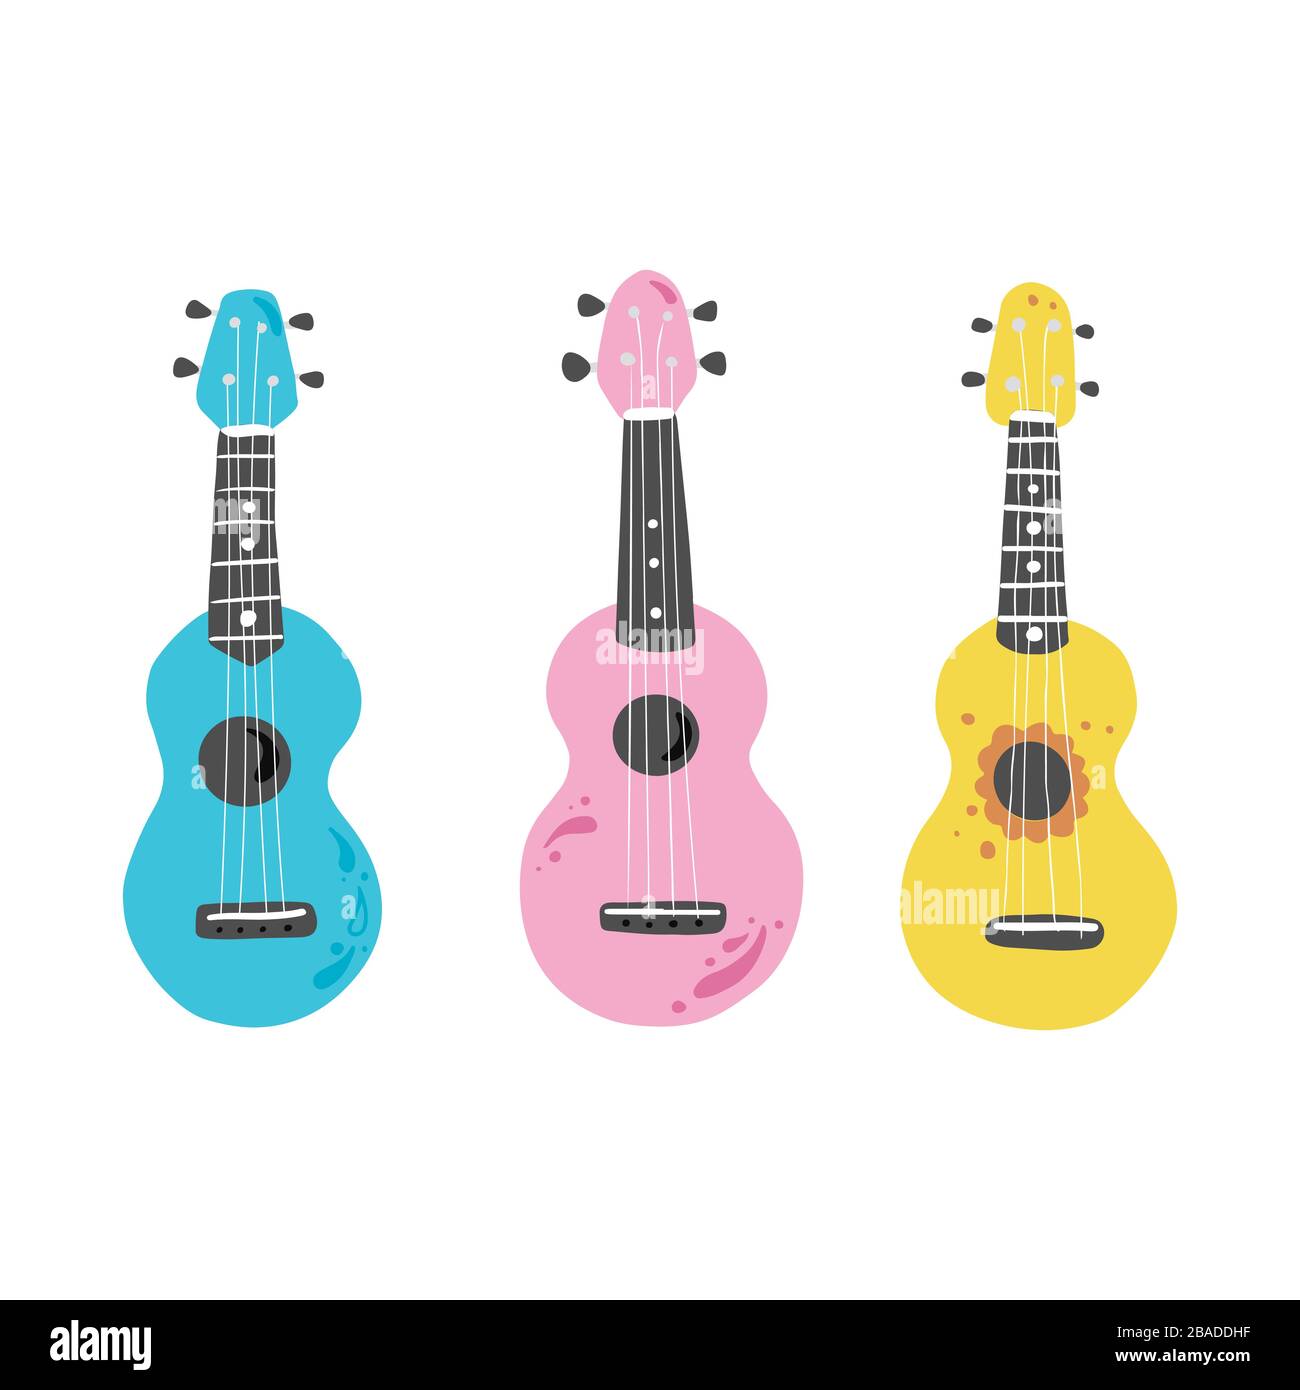 Joli ukulele de dessin animé pour affiche d'été, motif carte. Petite guitare, instrument de musique à cordes de style hawaï. Illuataration vectorielle de style simple dessiné à la main. Illustration de Vecteur